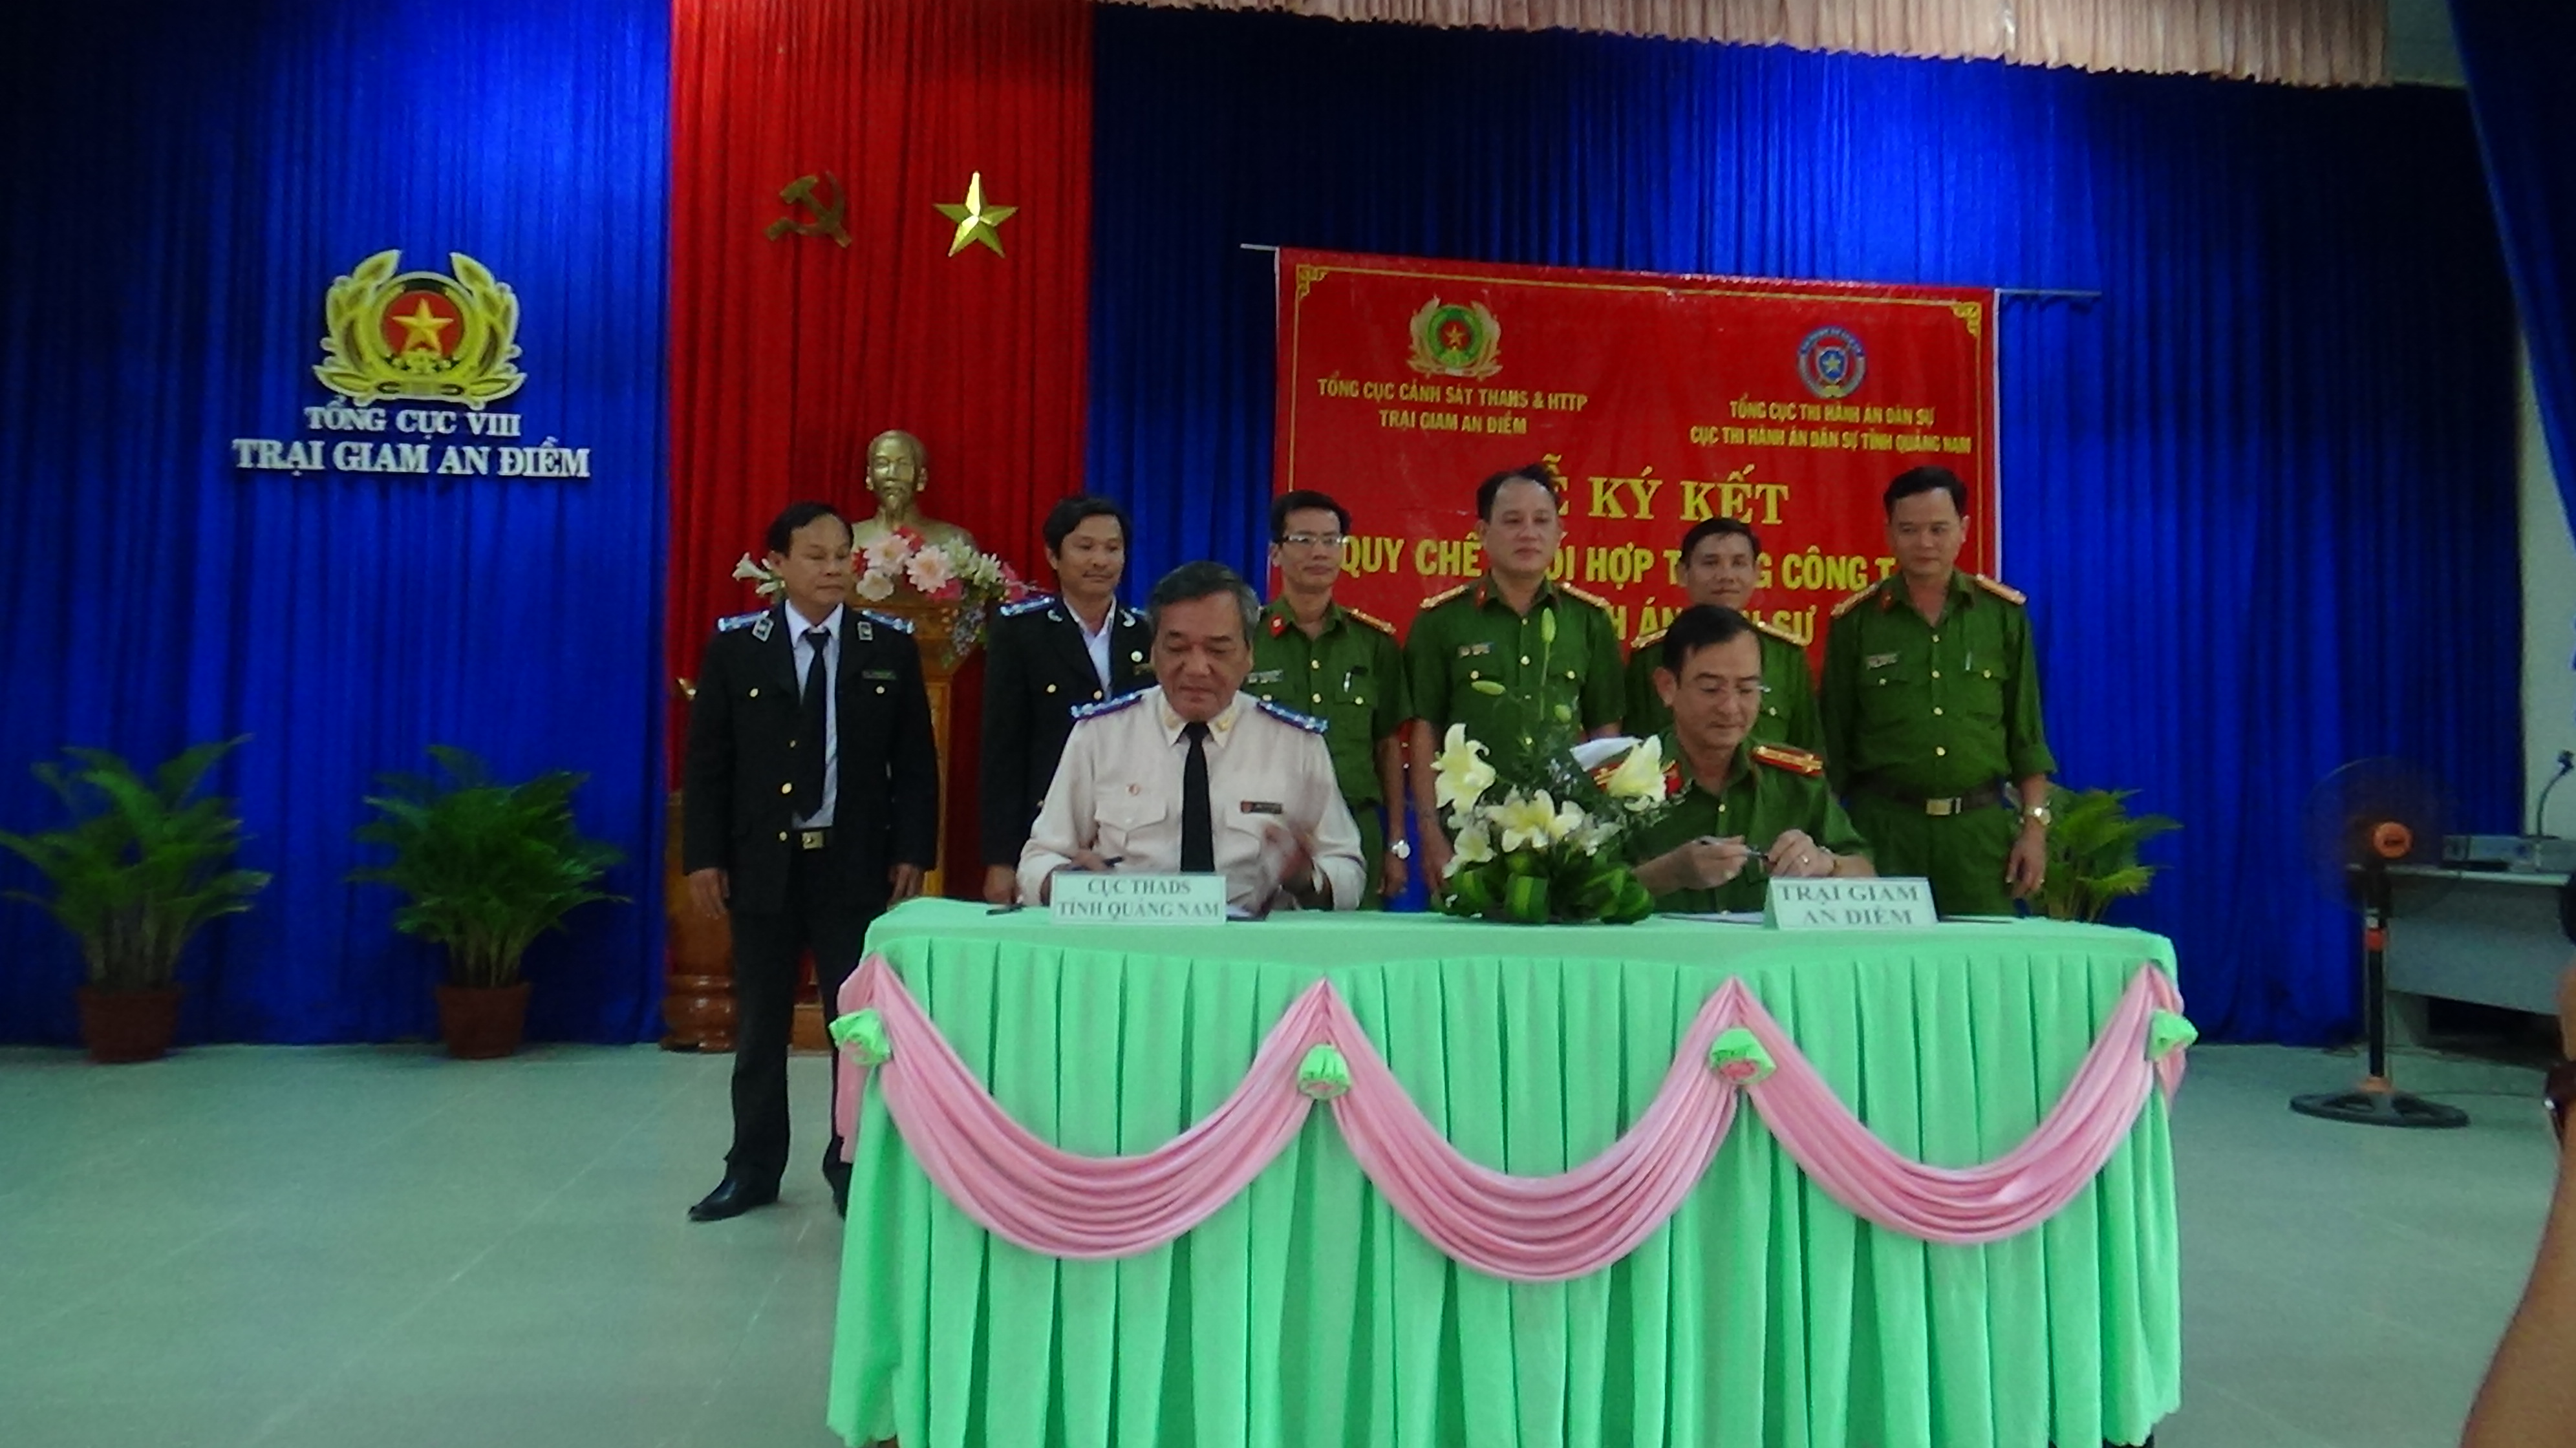 Cục thi hành án dân sự tỉnh Quảng Nam và Trại giam An Điềm tổ chức Lễ ký kết Quy chế phối hợp trong công tác thi hành án dân sự.